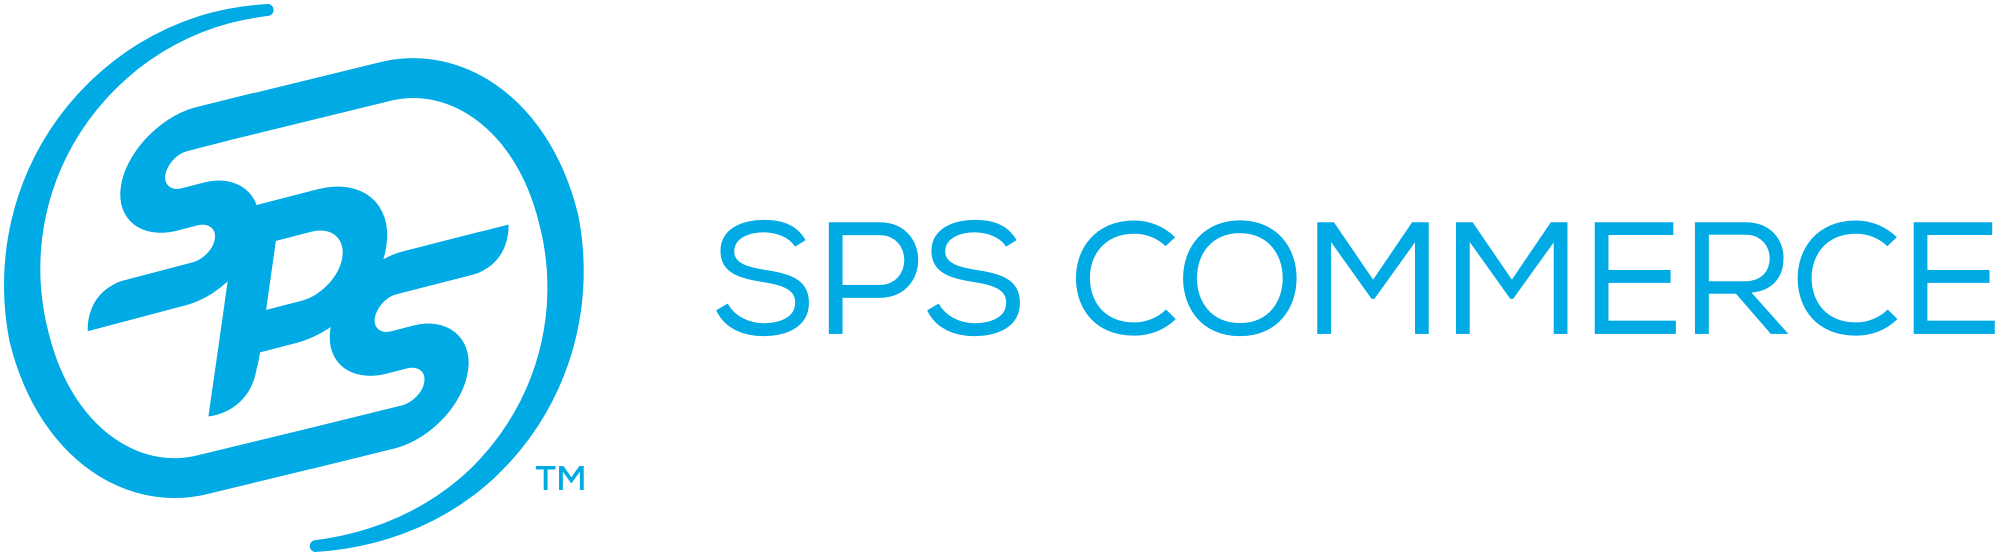 SPS Commerce for MYOB logo